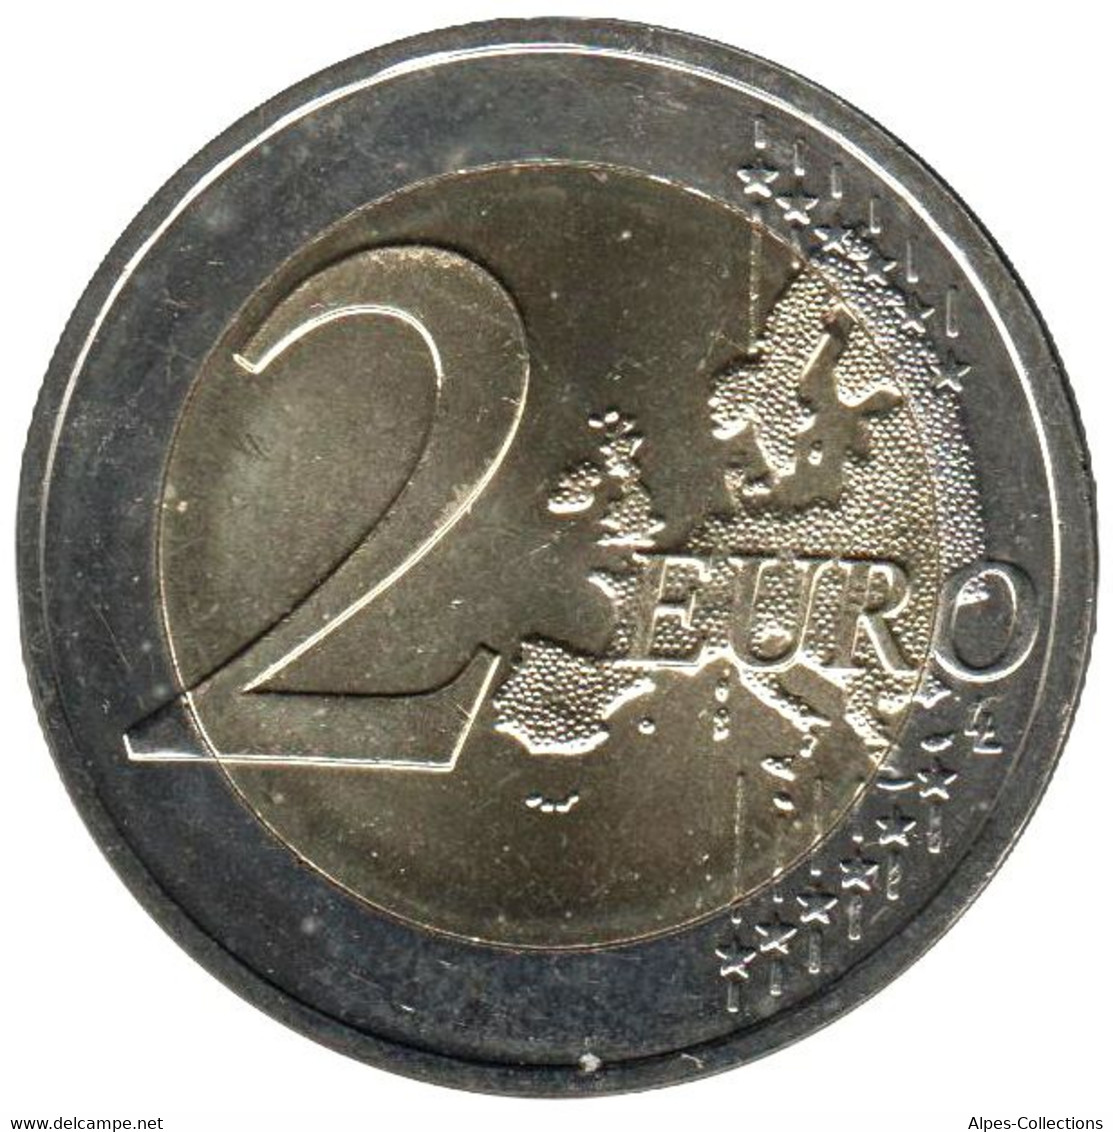 LI20019.1 - LITUANIE - 2 Euros Comm. Les Sutartines Chansons Lituaniennes - 2019 - Litauen